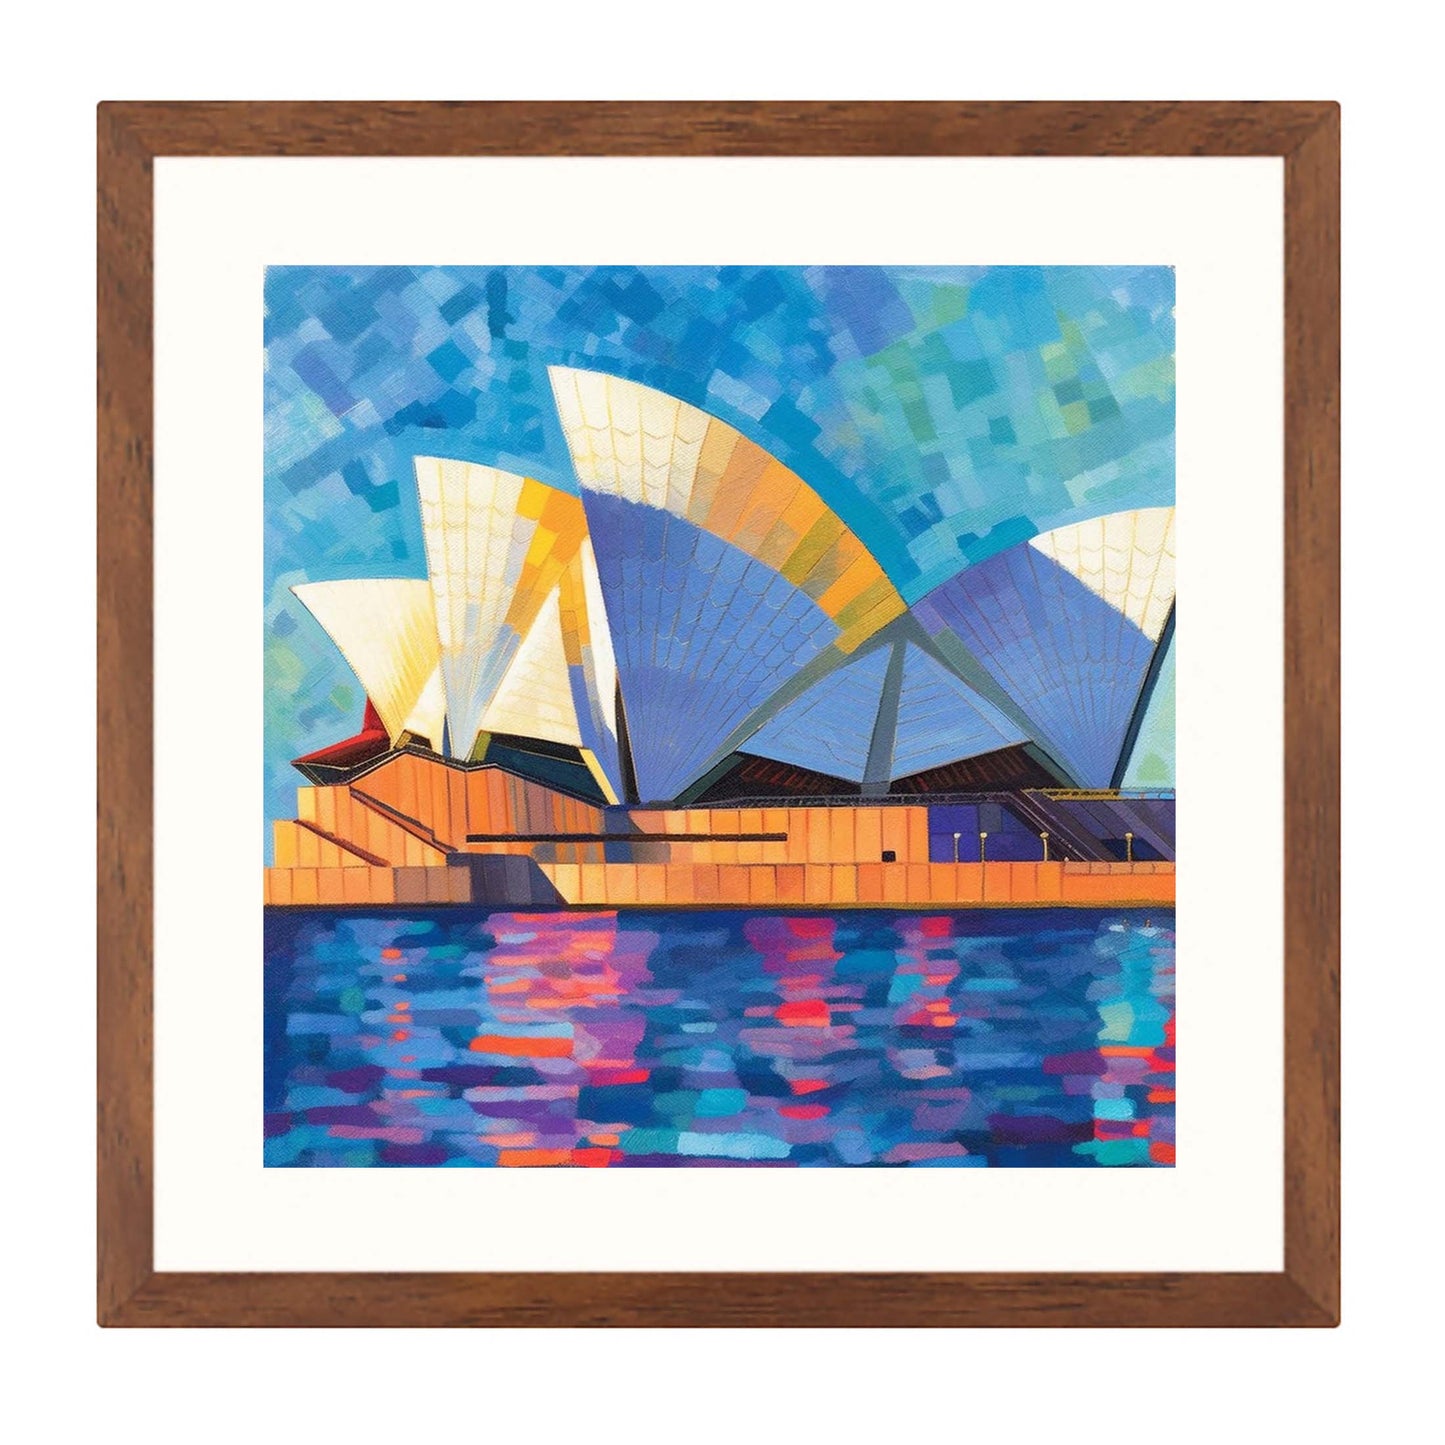 Sydney - Opera House - peinture murale dans le style de l'impressionnisme